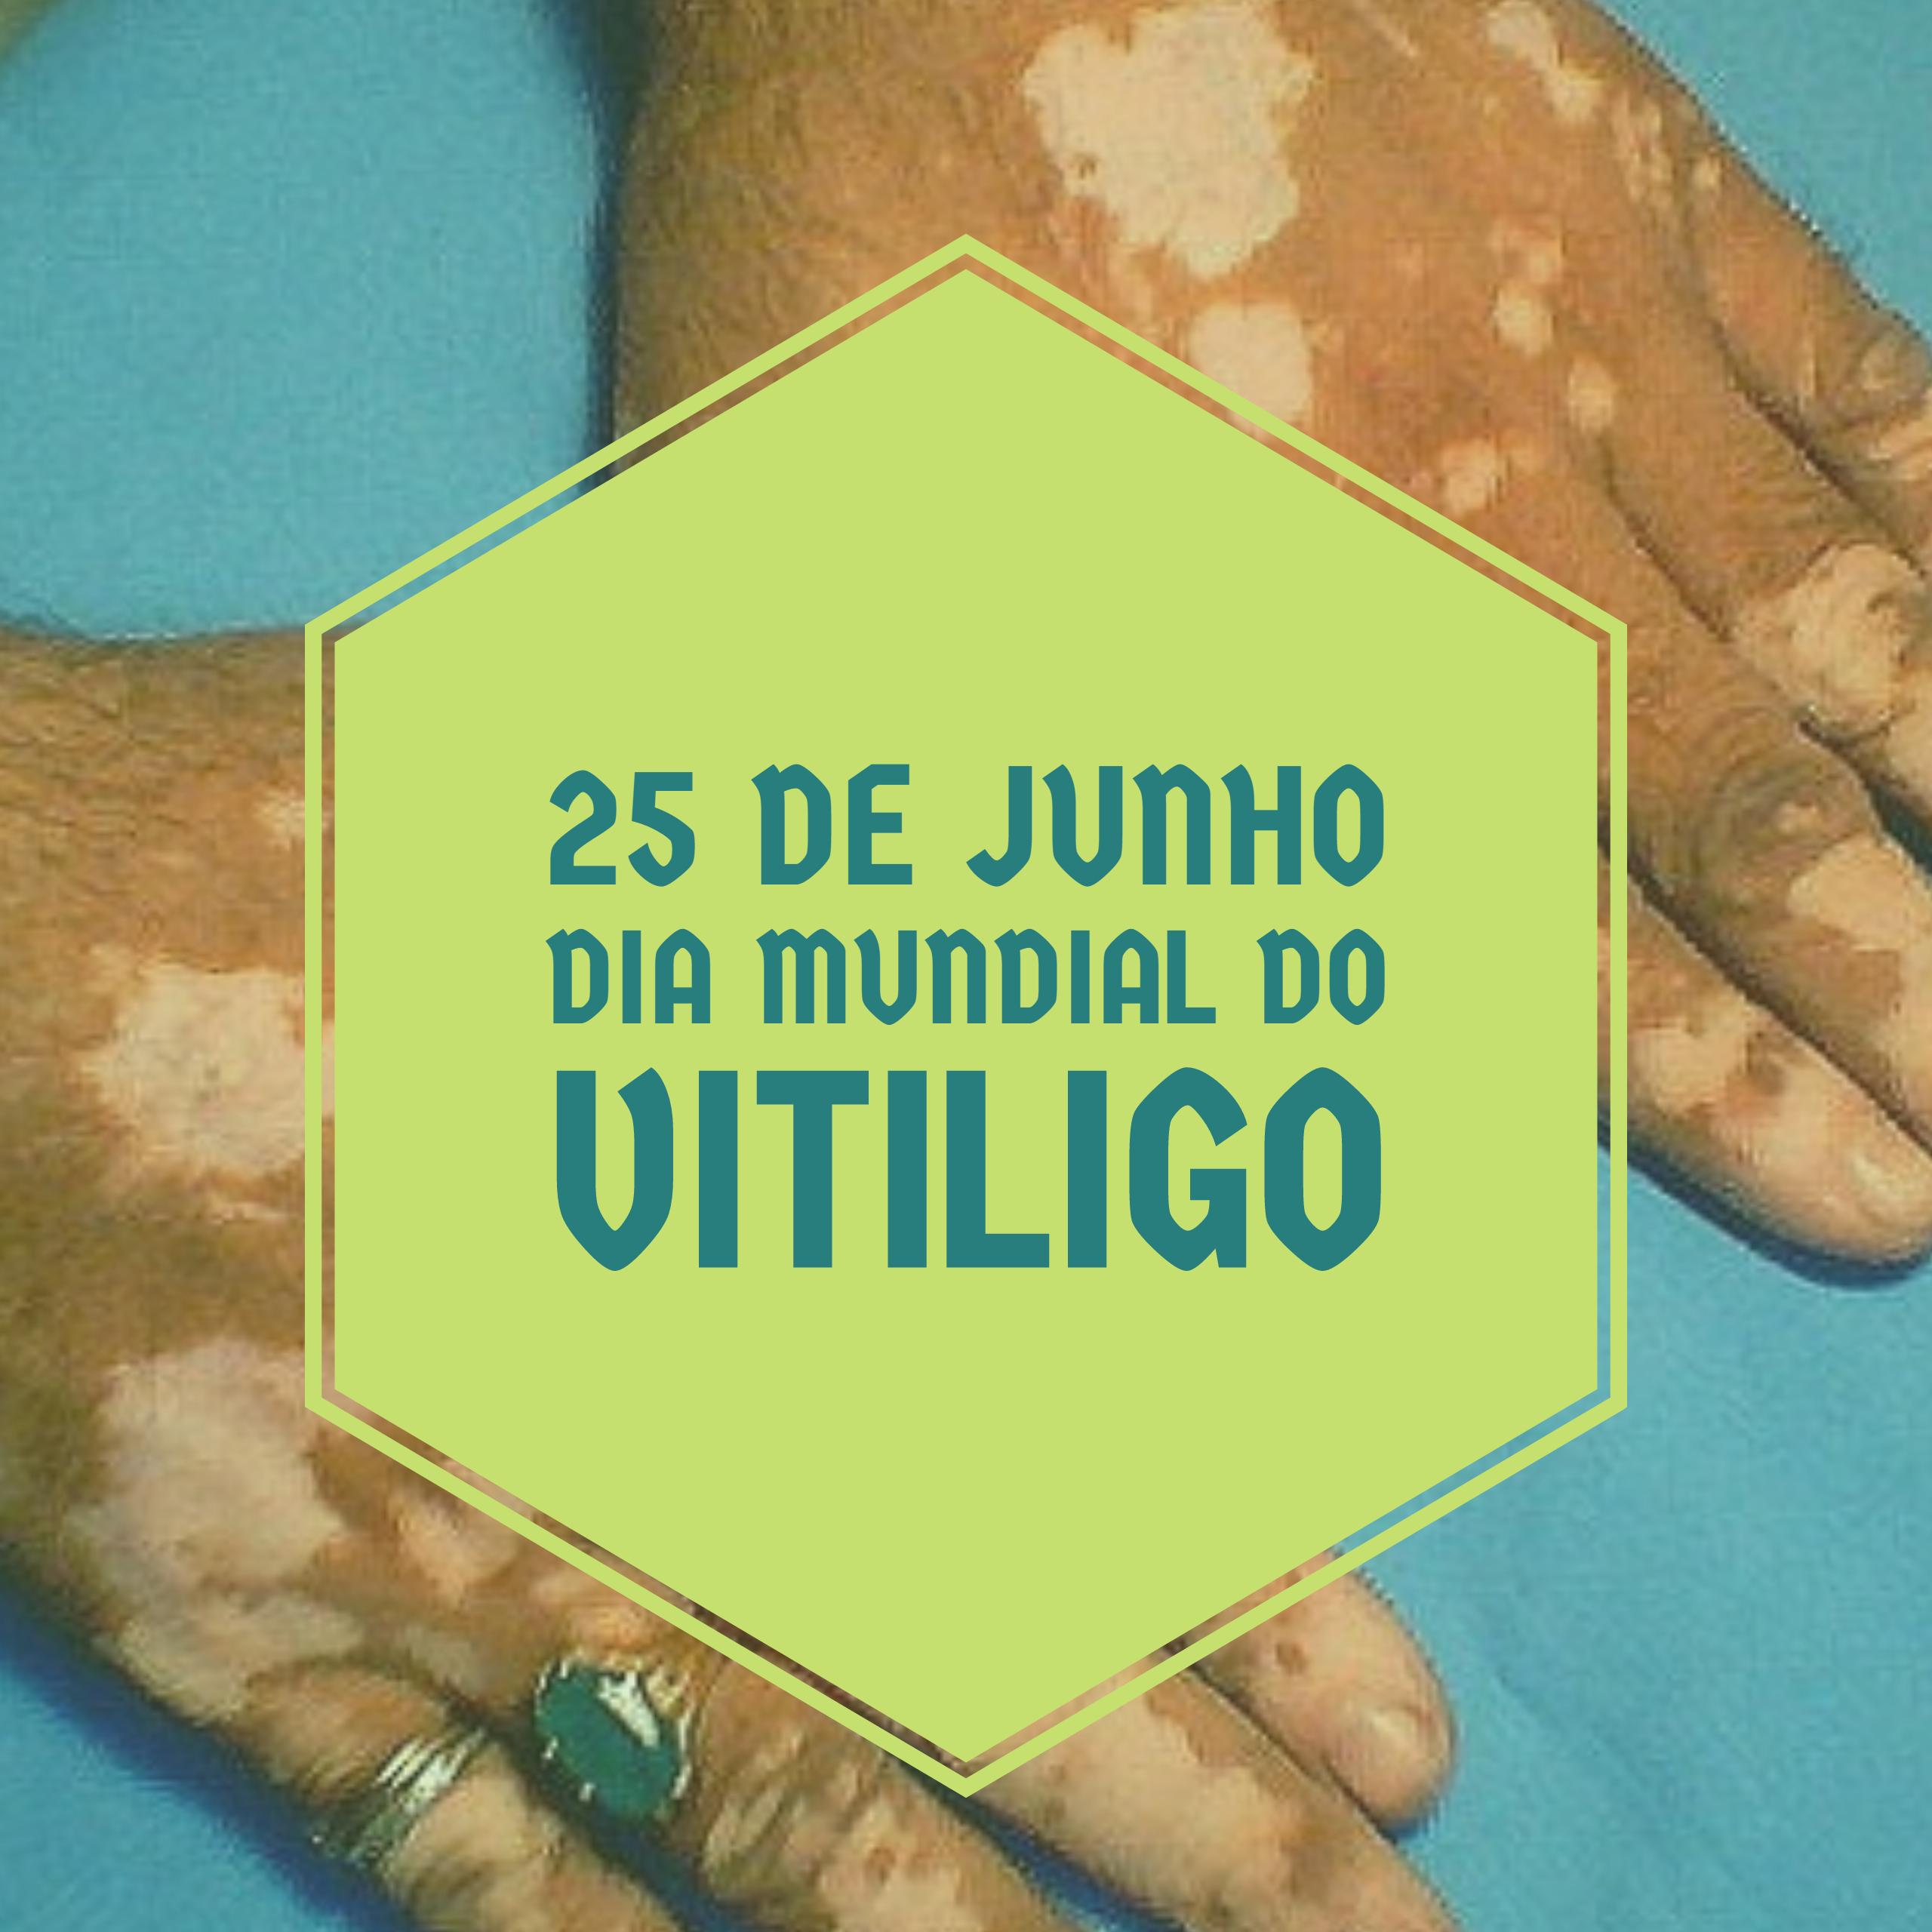 Dia Mundial do Vitiligo